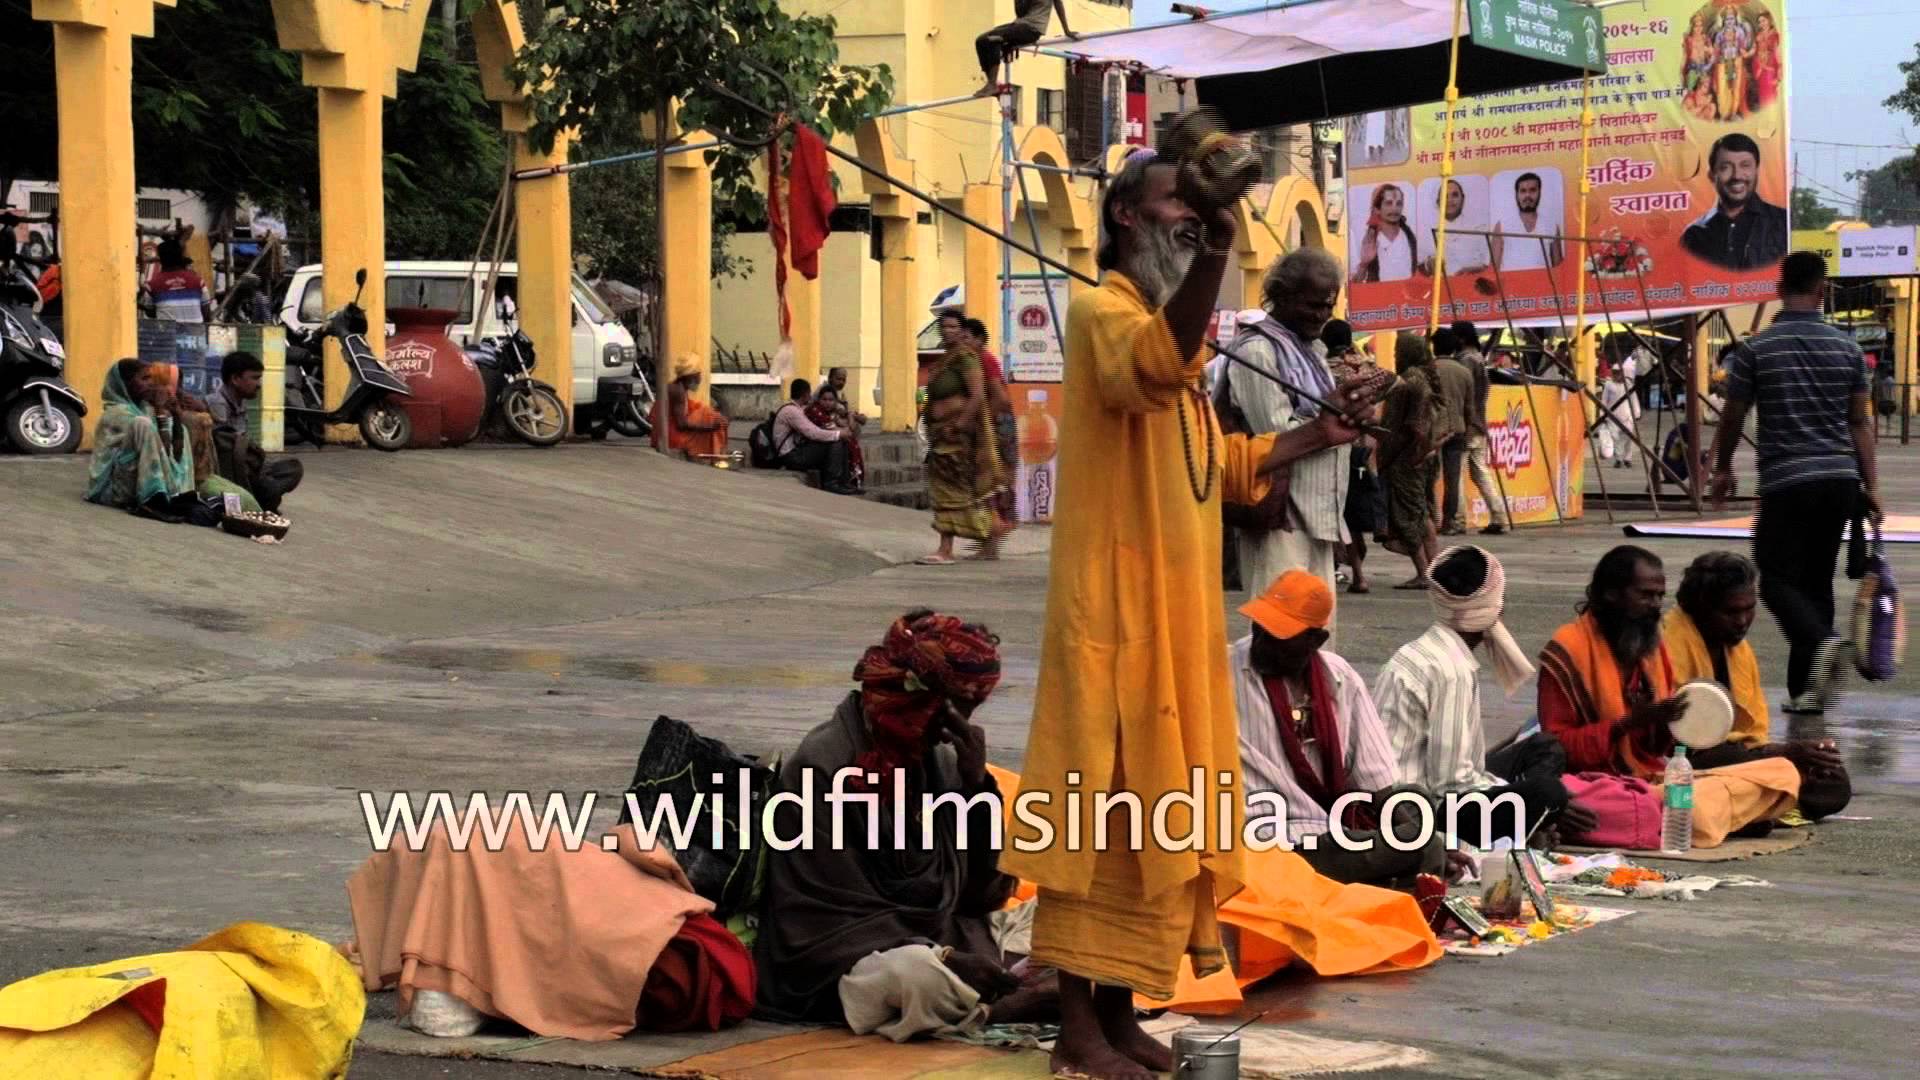 Hindu holy men or sadhus gathered at Nashik Kumbh mela - YouTube